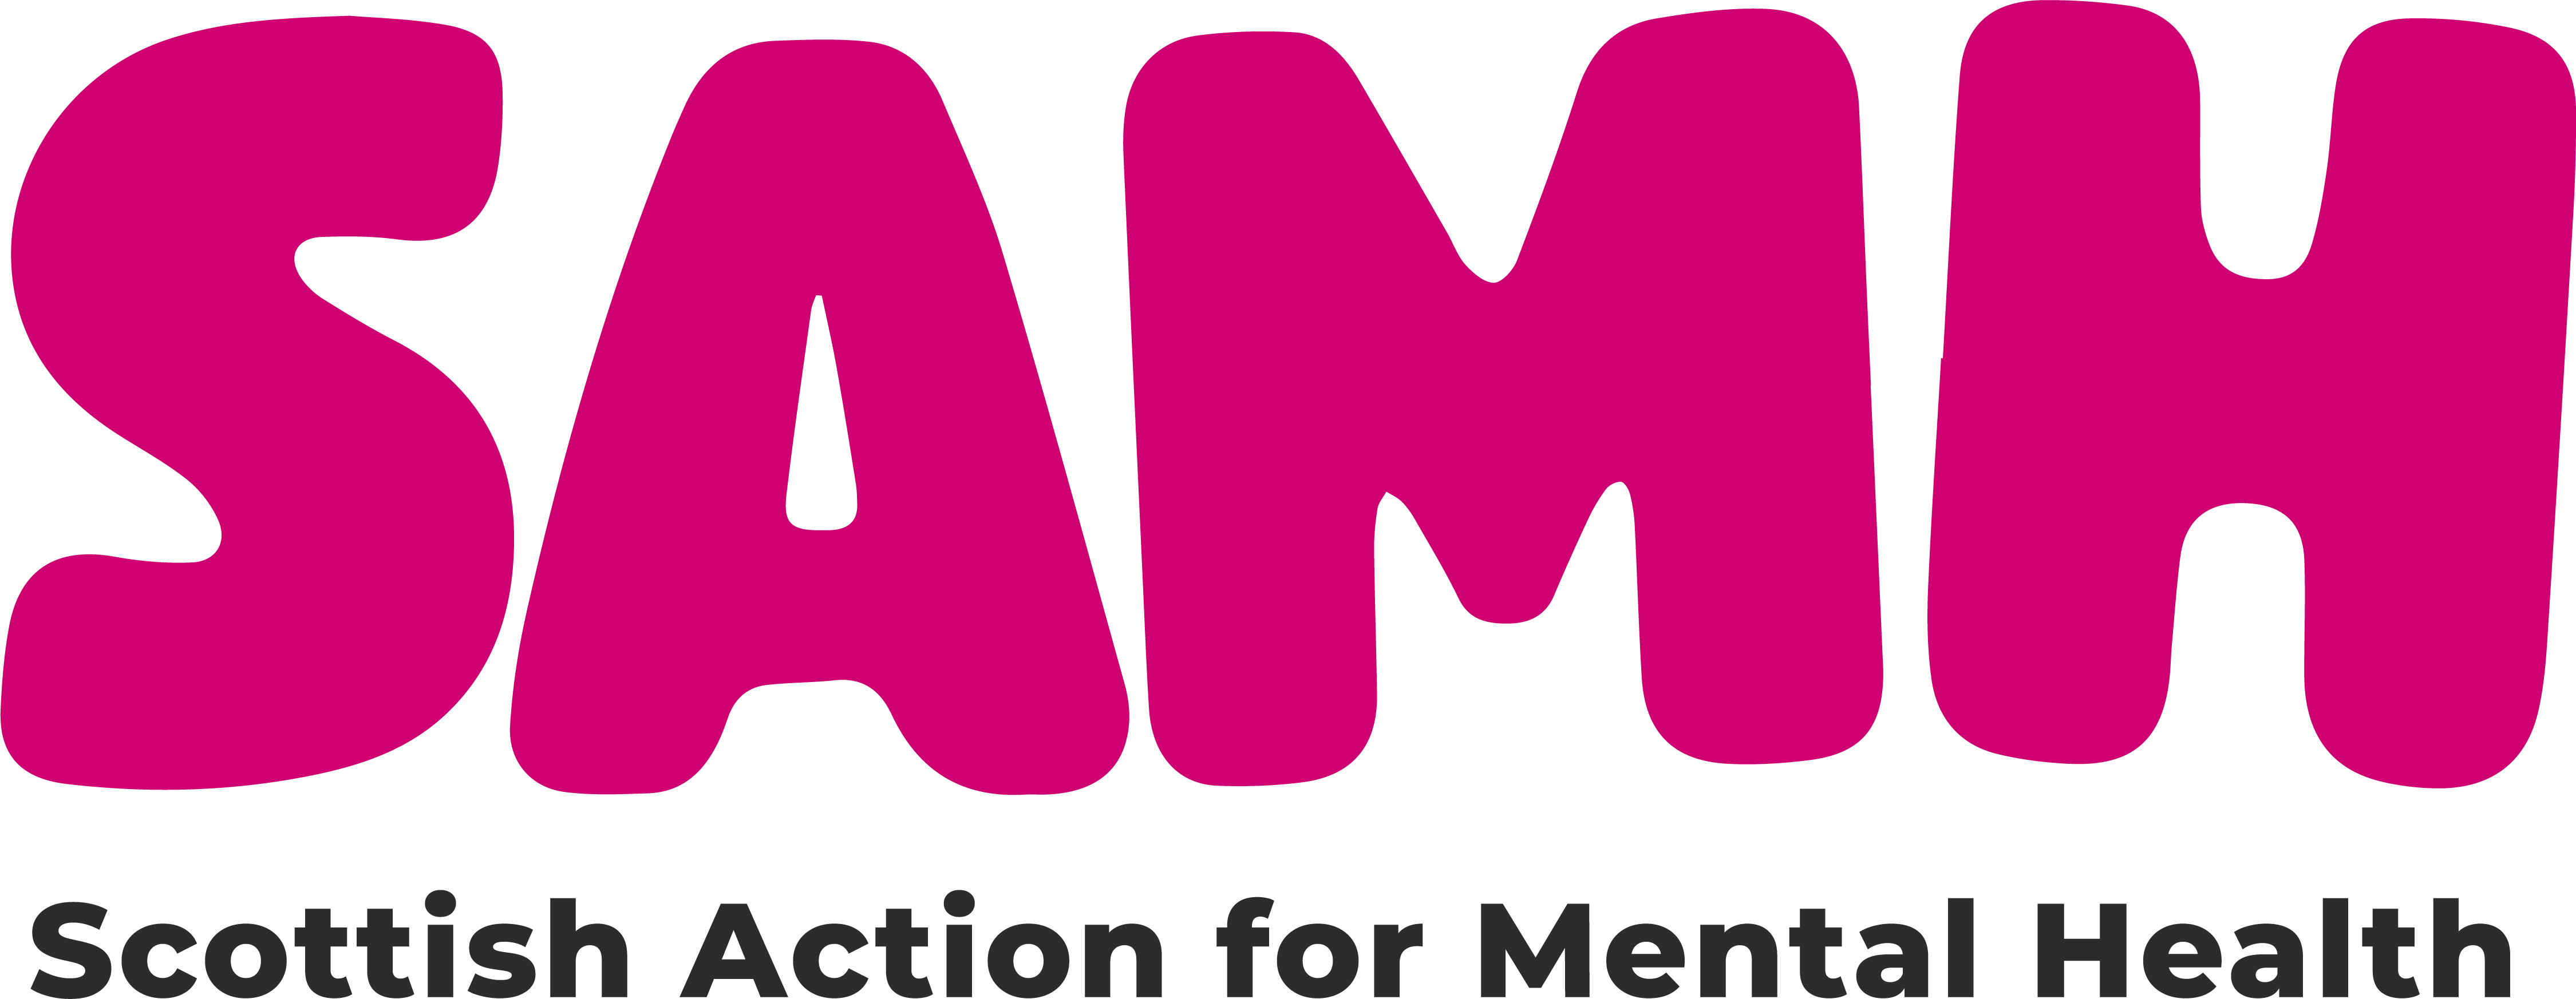 logo for Scottish Action for Mental Health (SAMH)